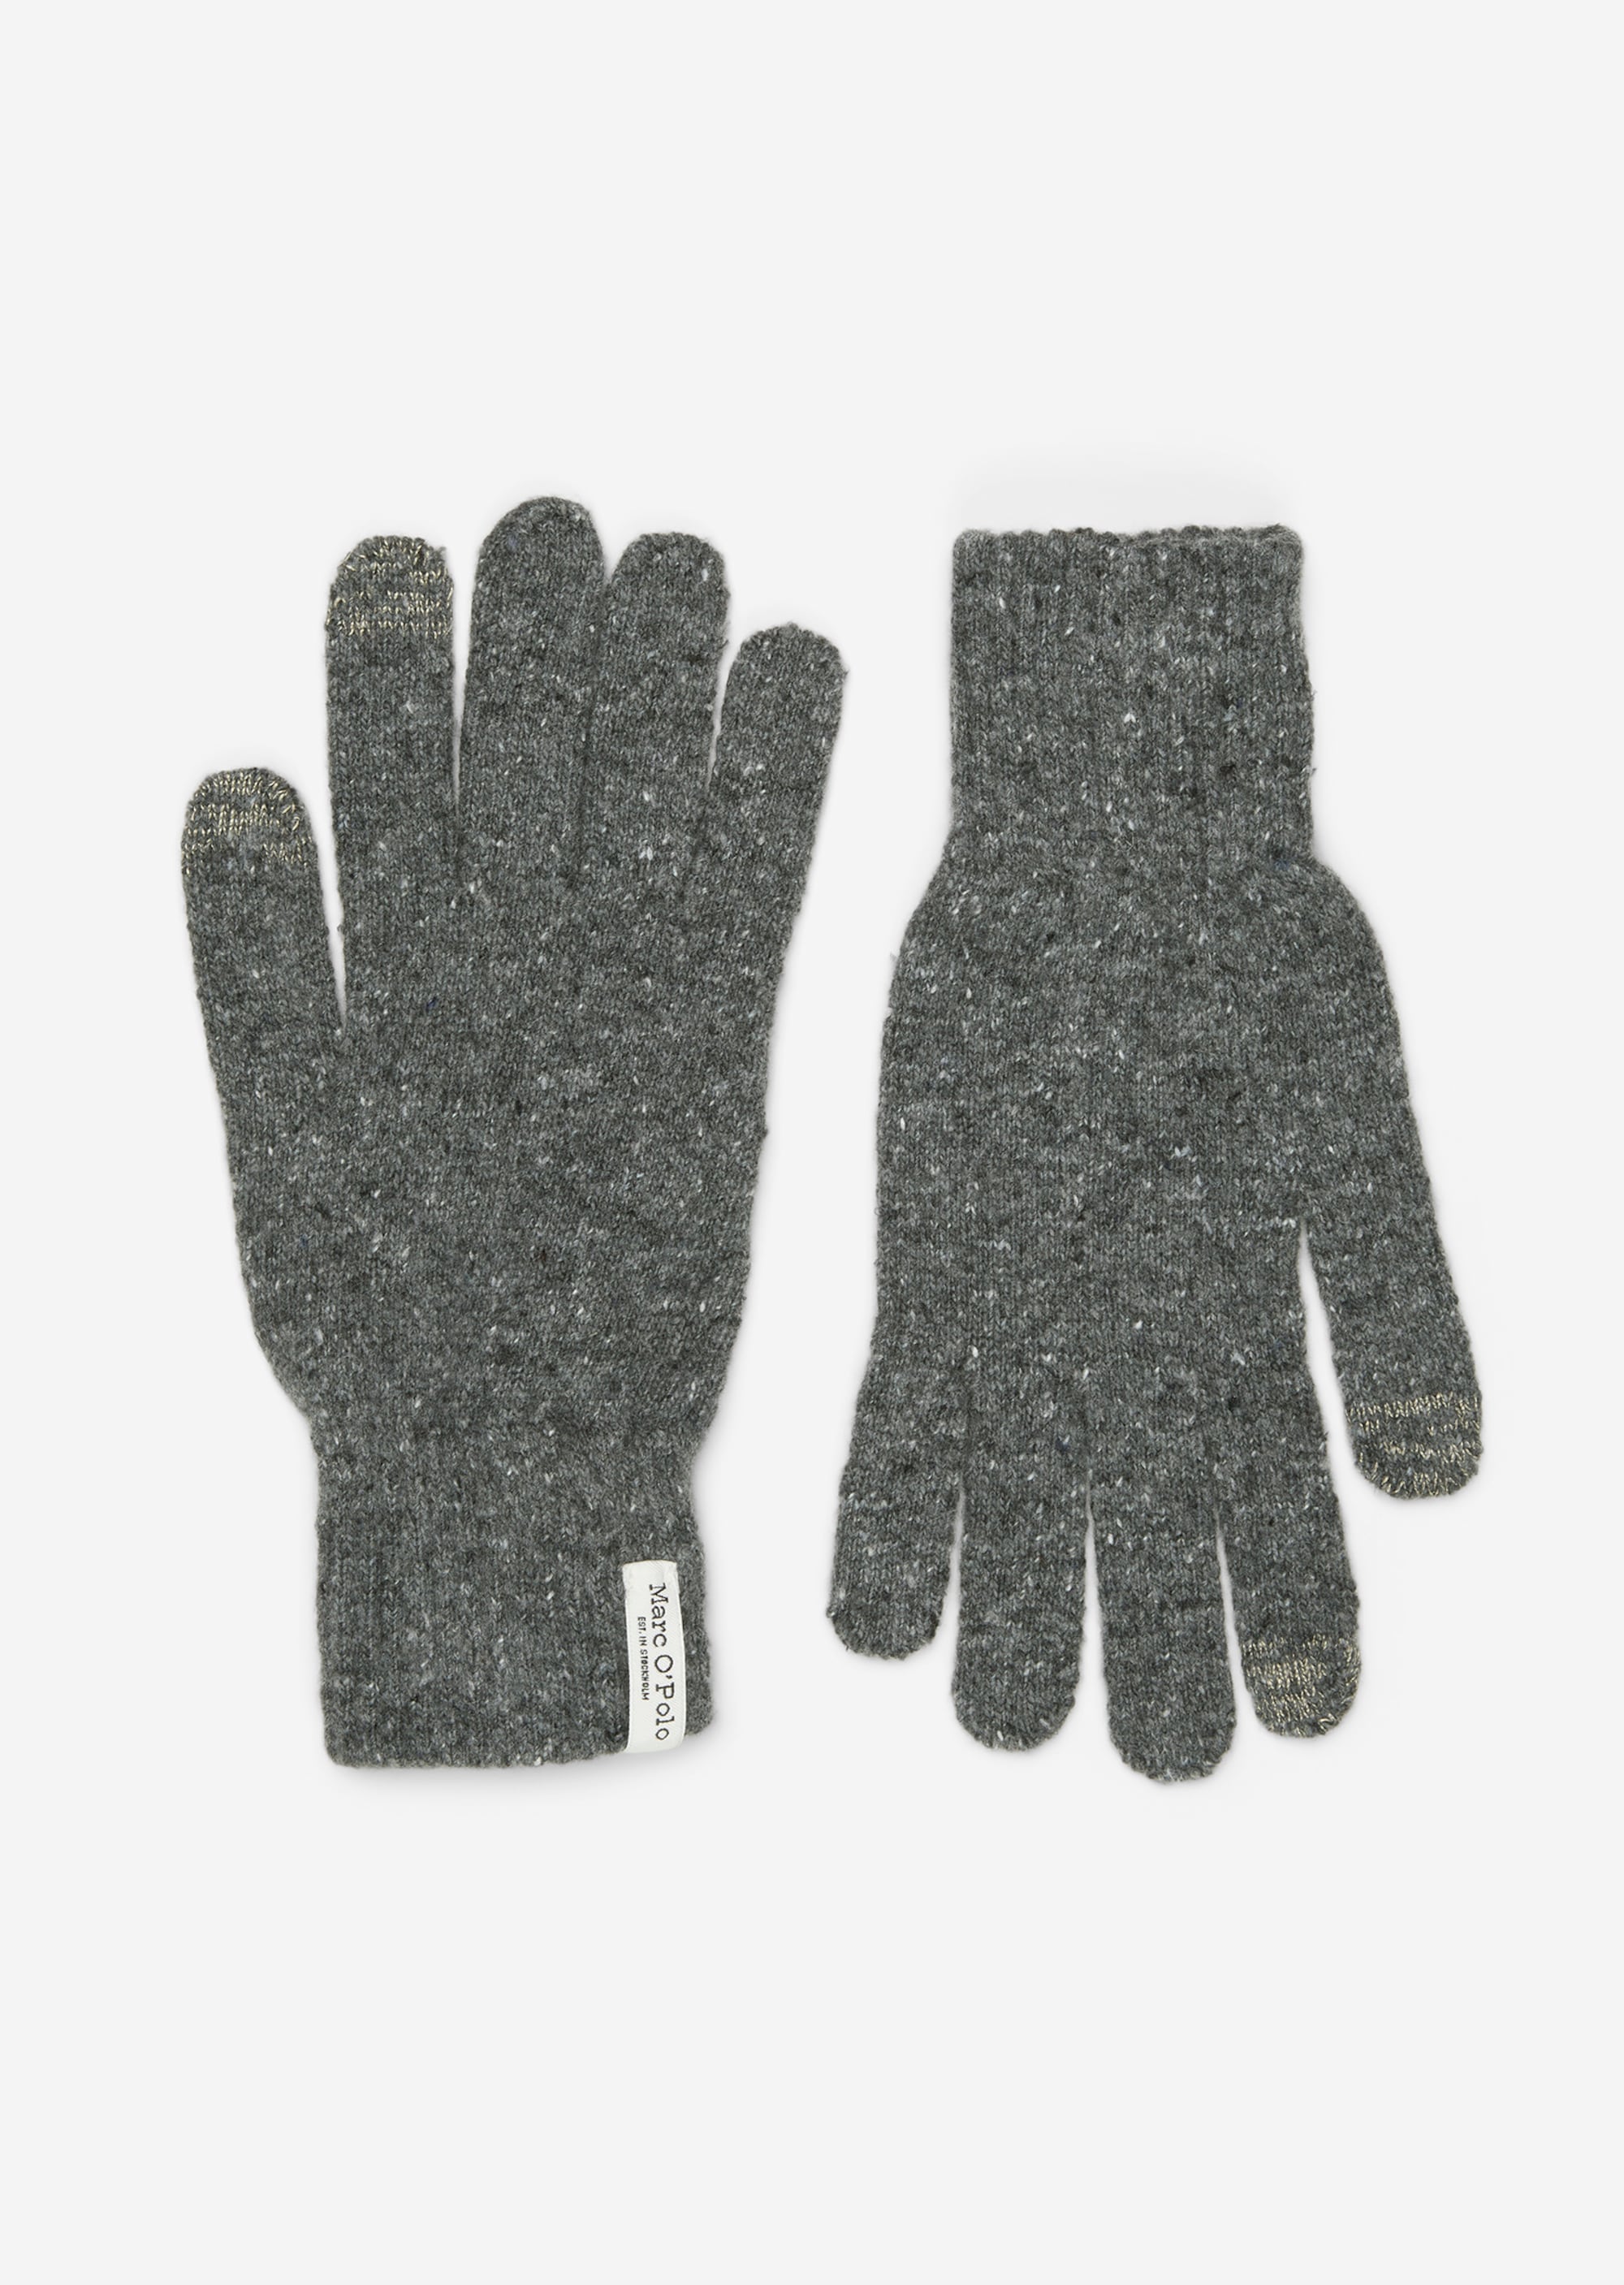 Strickhandschuhe aus softem Schurwolle-Mix - grau | Handschuhe | MARC O'POLO